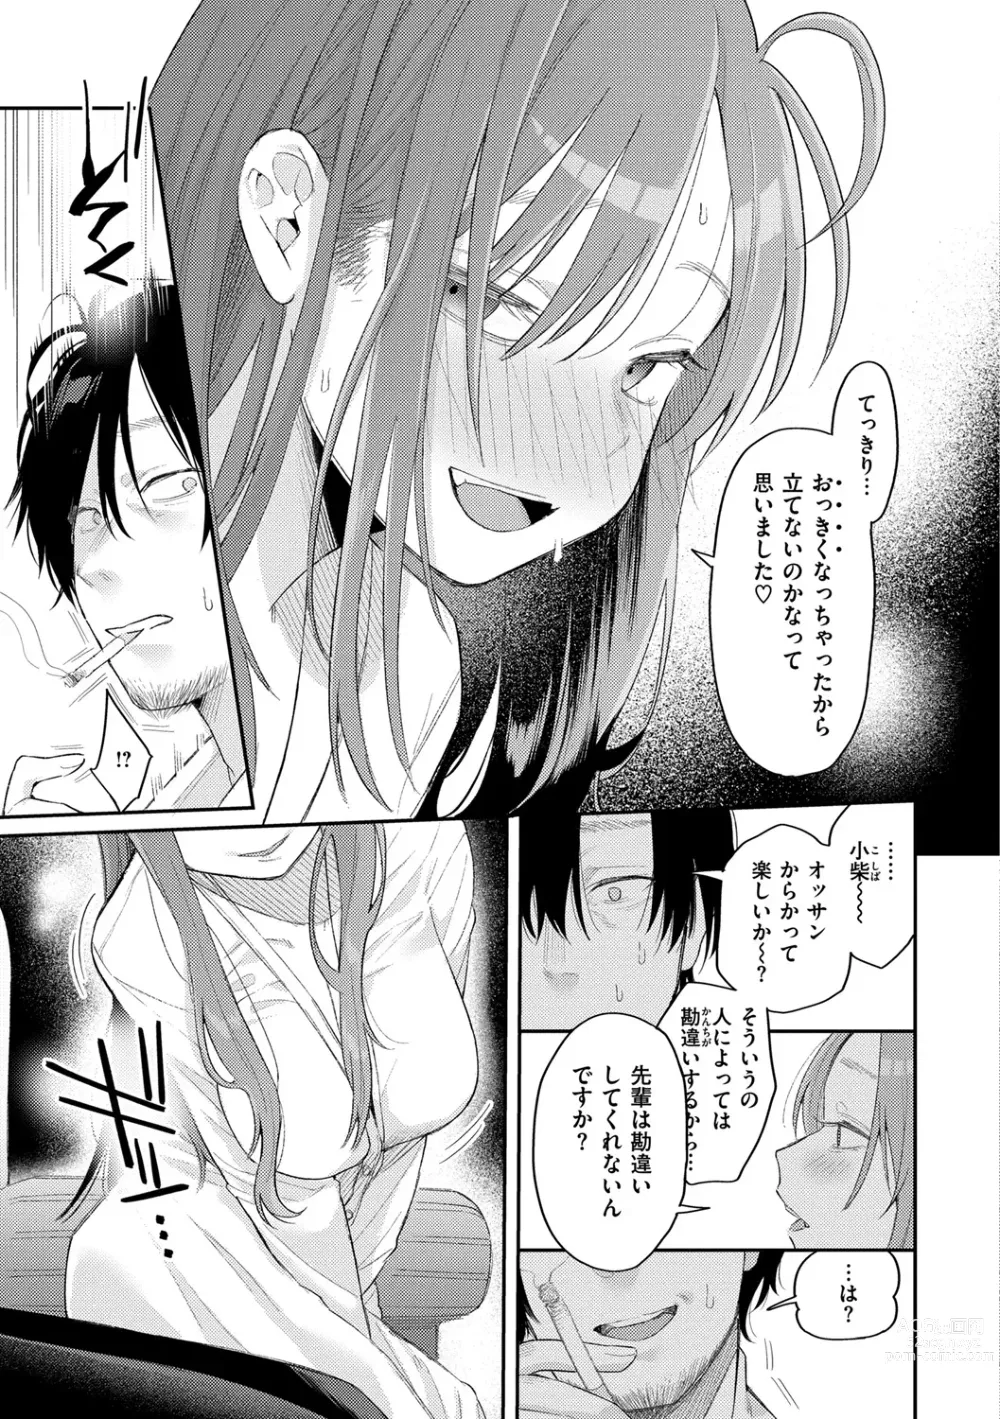 Page 15 of manga Konya Mechakucha ni Nattara - Fill me up tonight